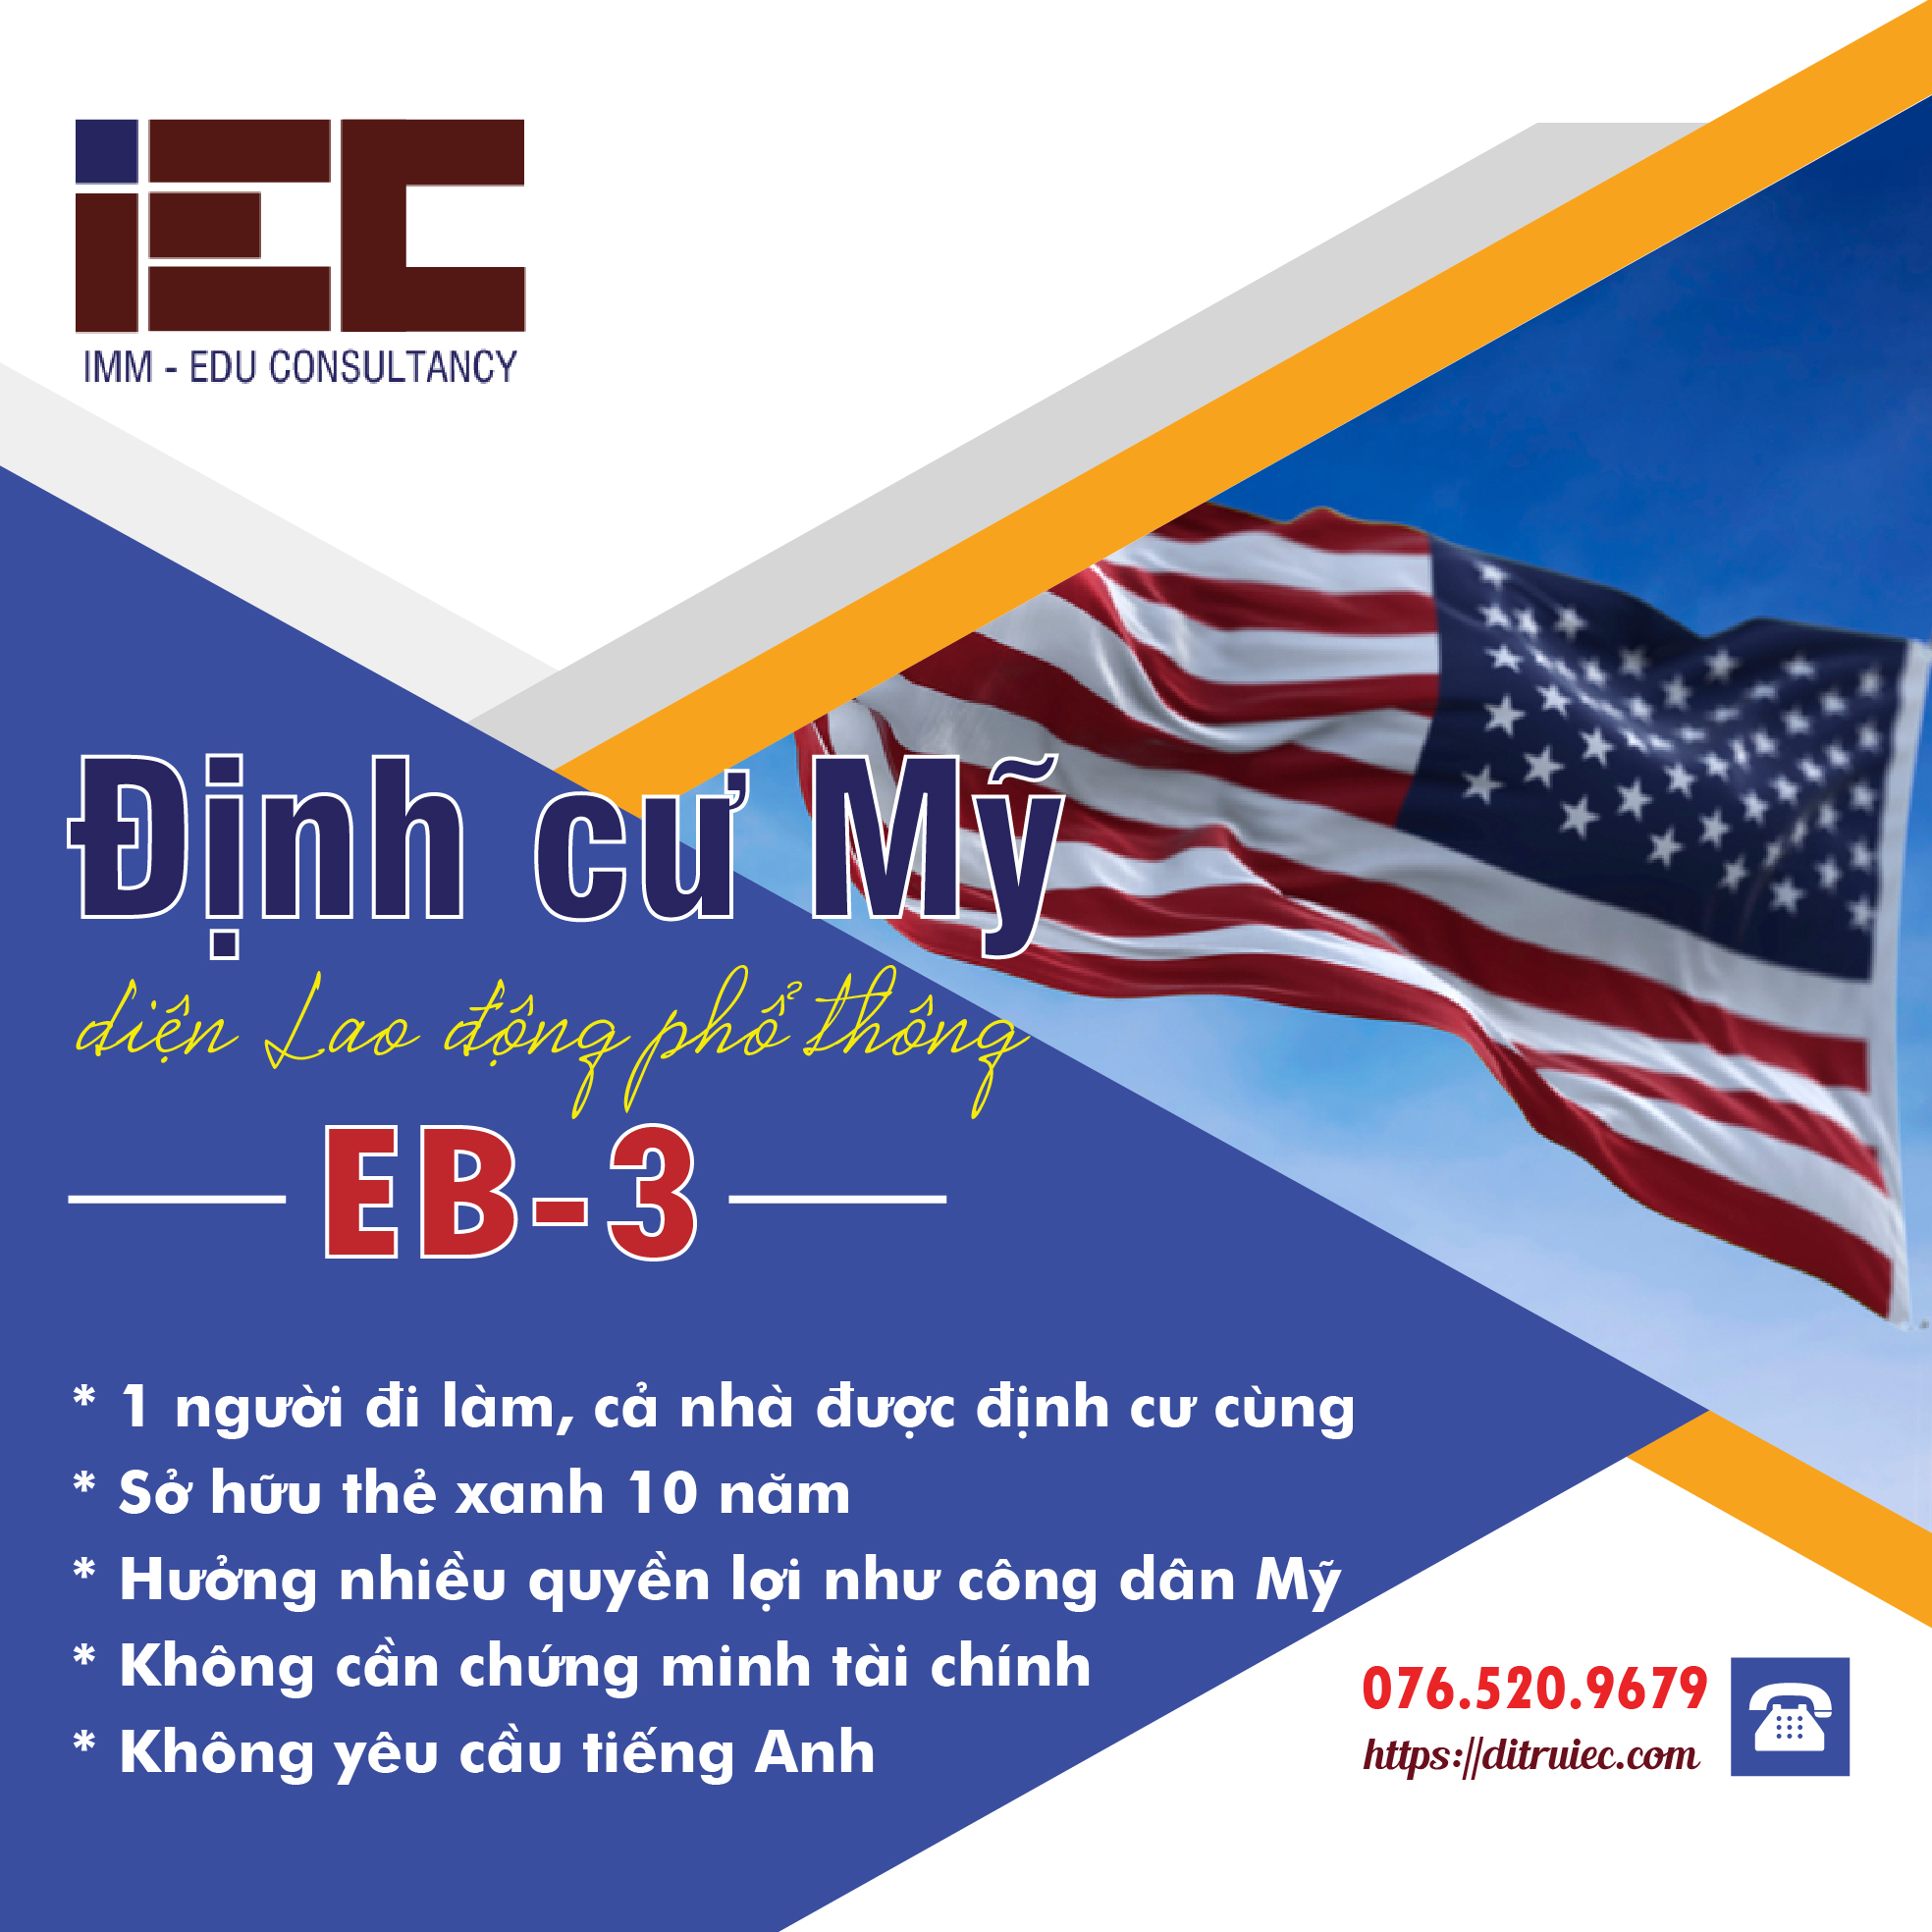 Định cư Mỹ diện EB-3 kinh nghiệm phỏng vấn thành công